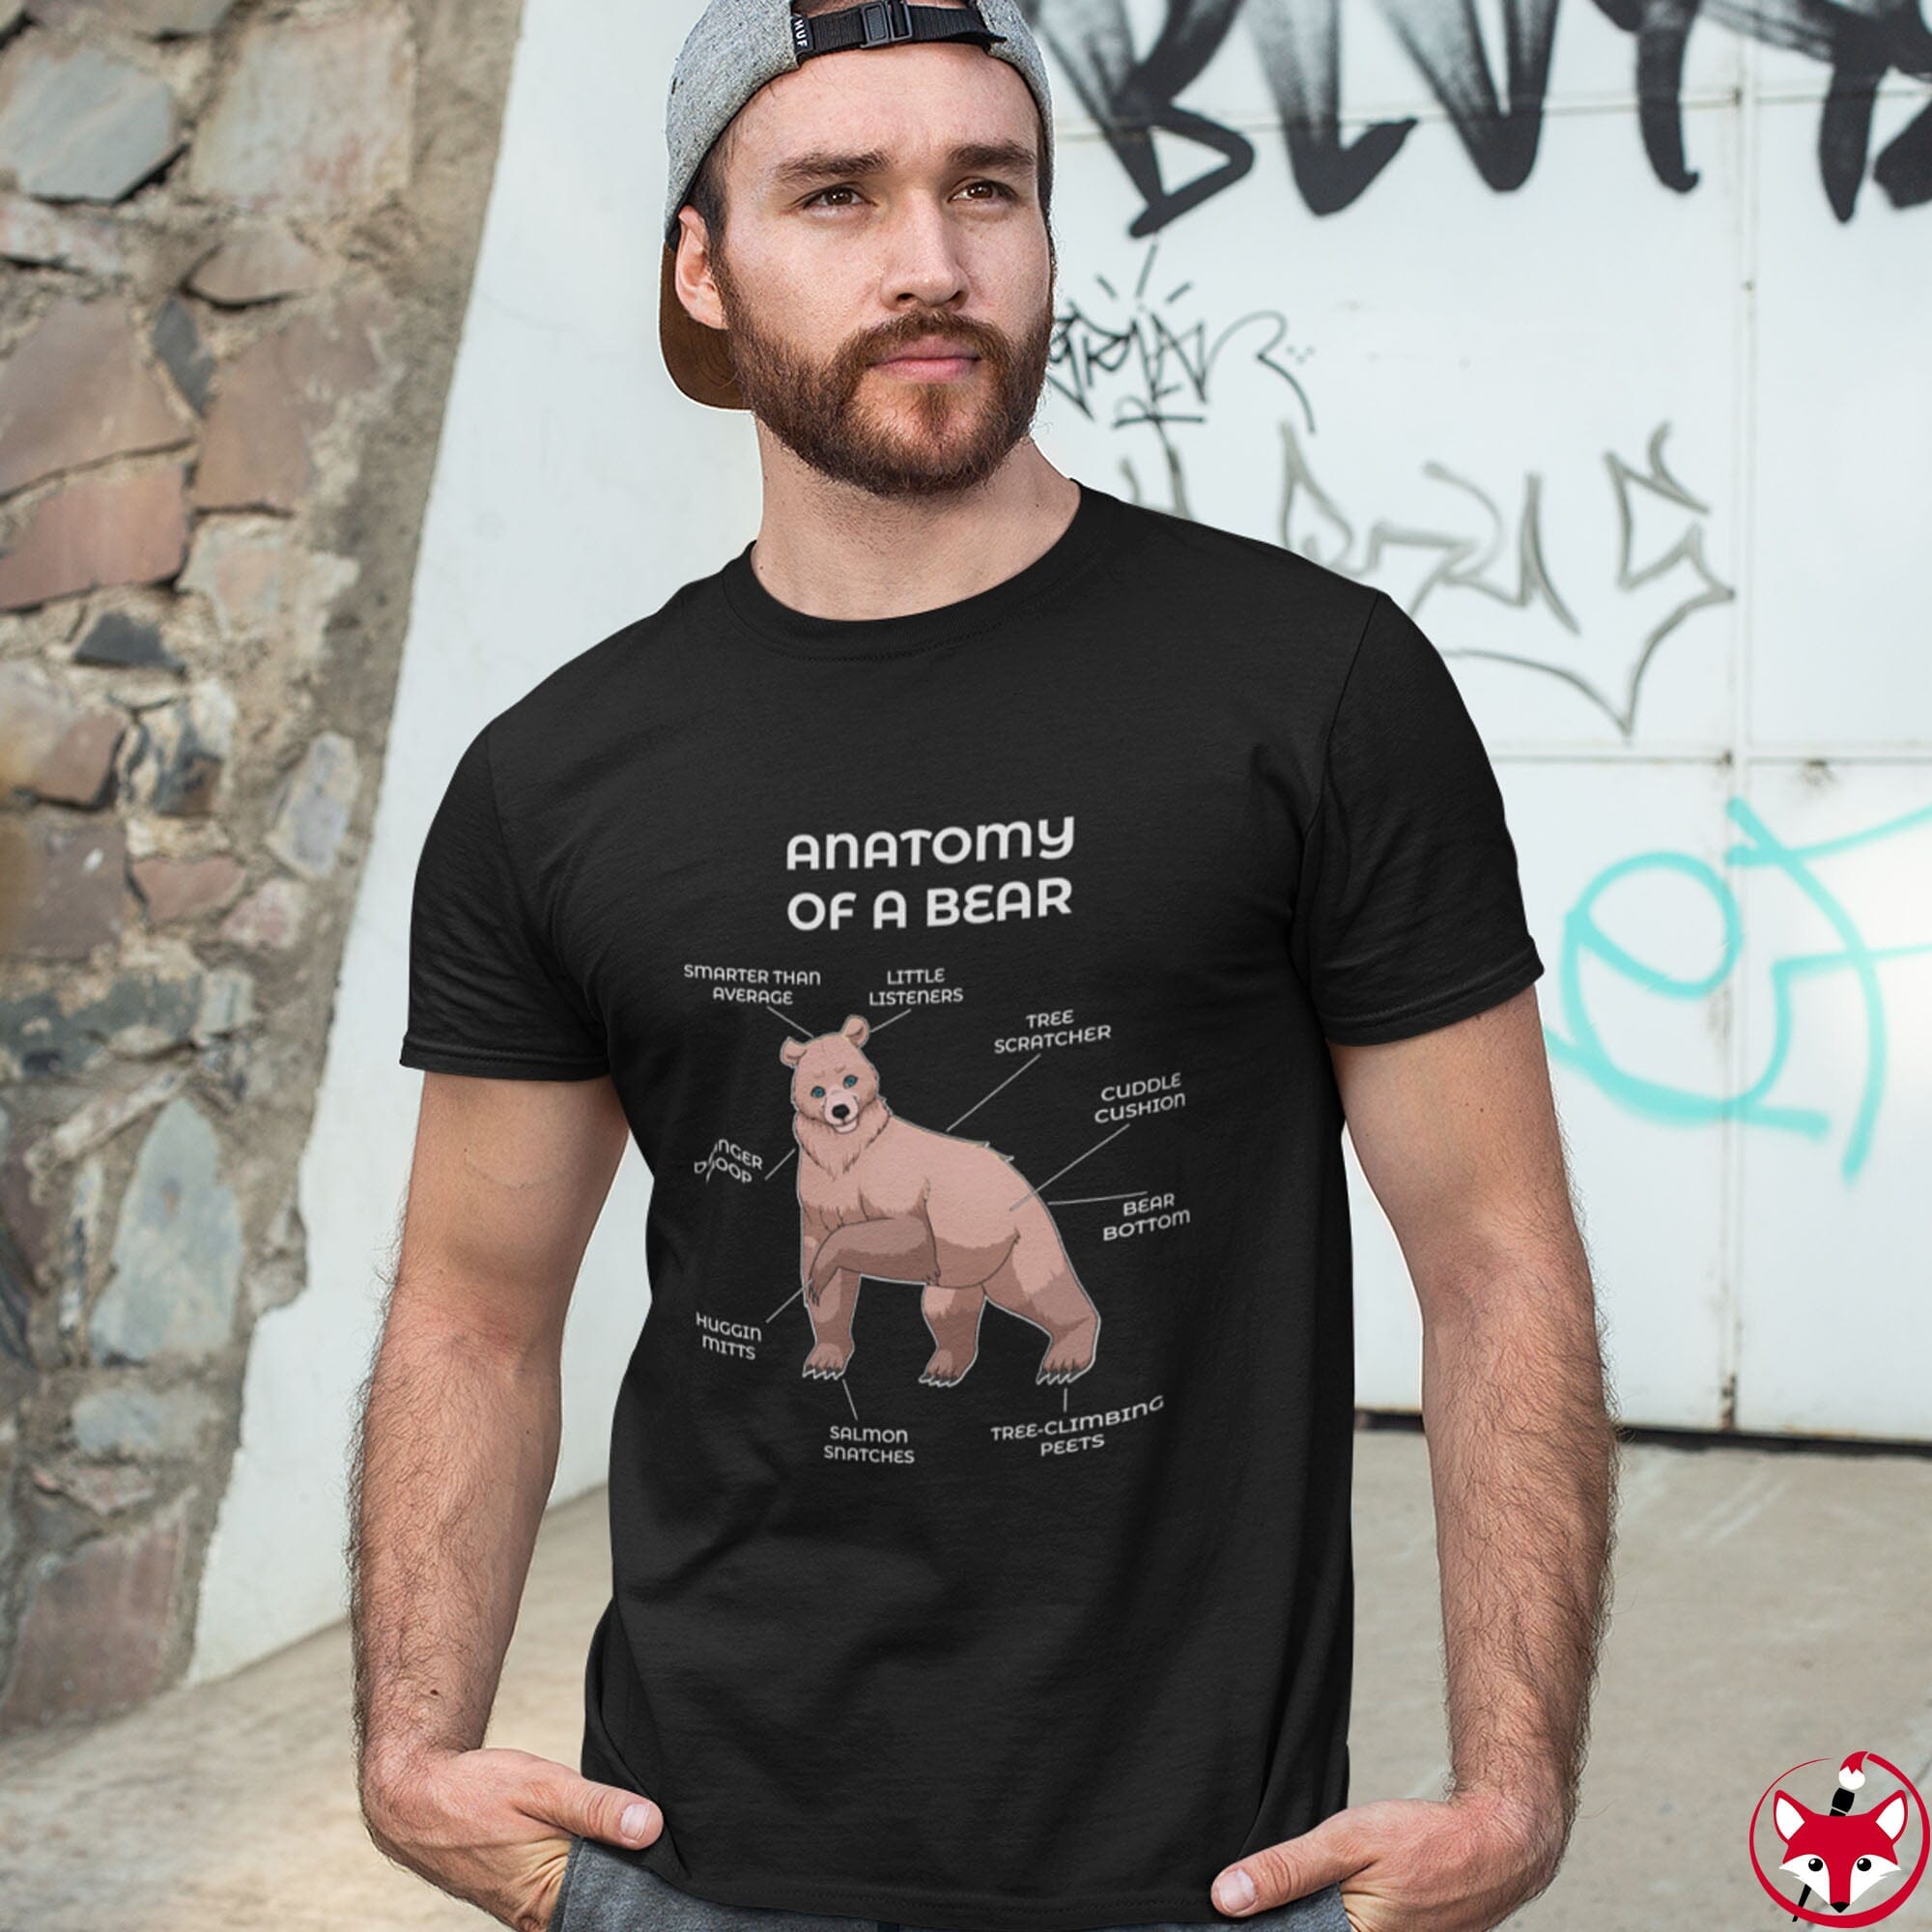 Bear Sand - T-Shirt T-Shirt Artworktee 